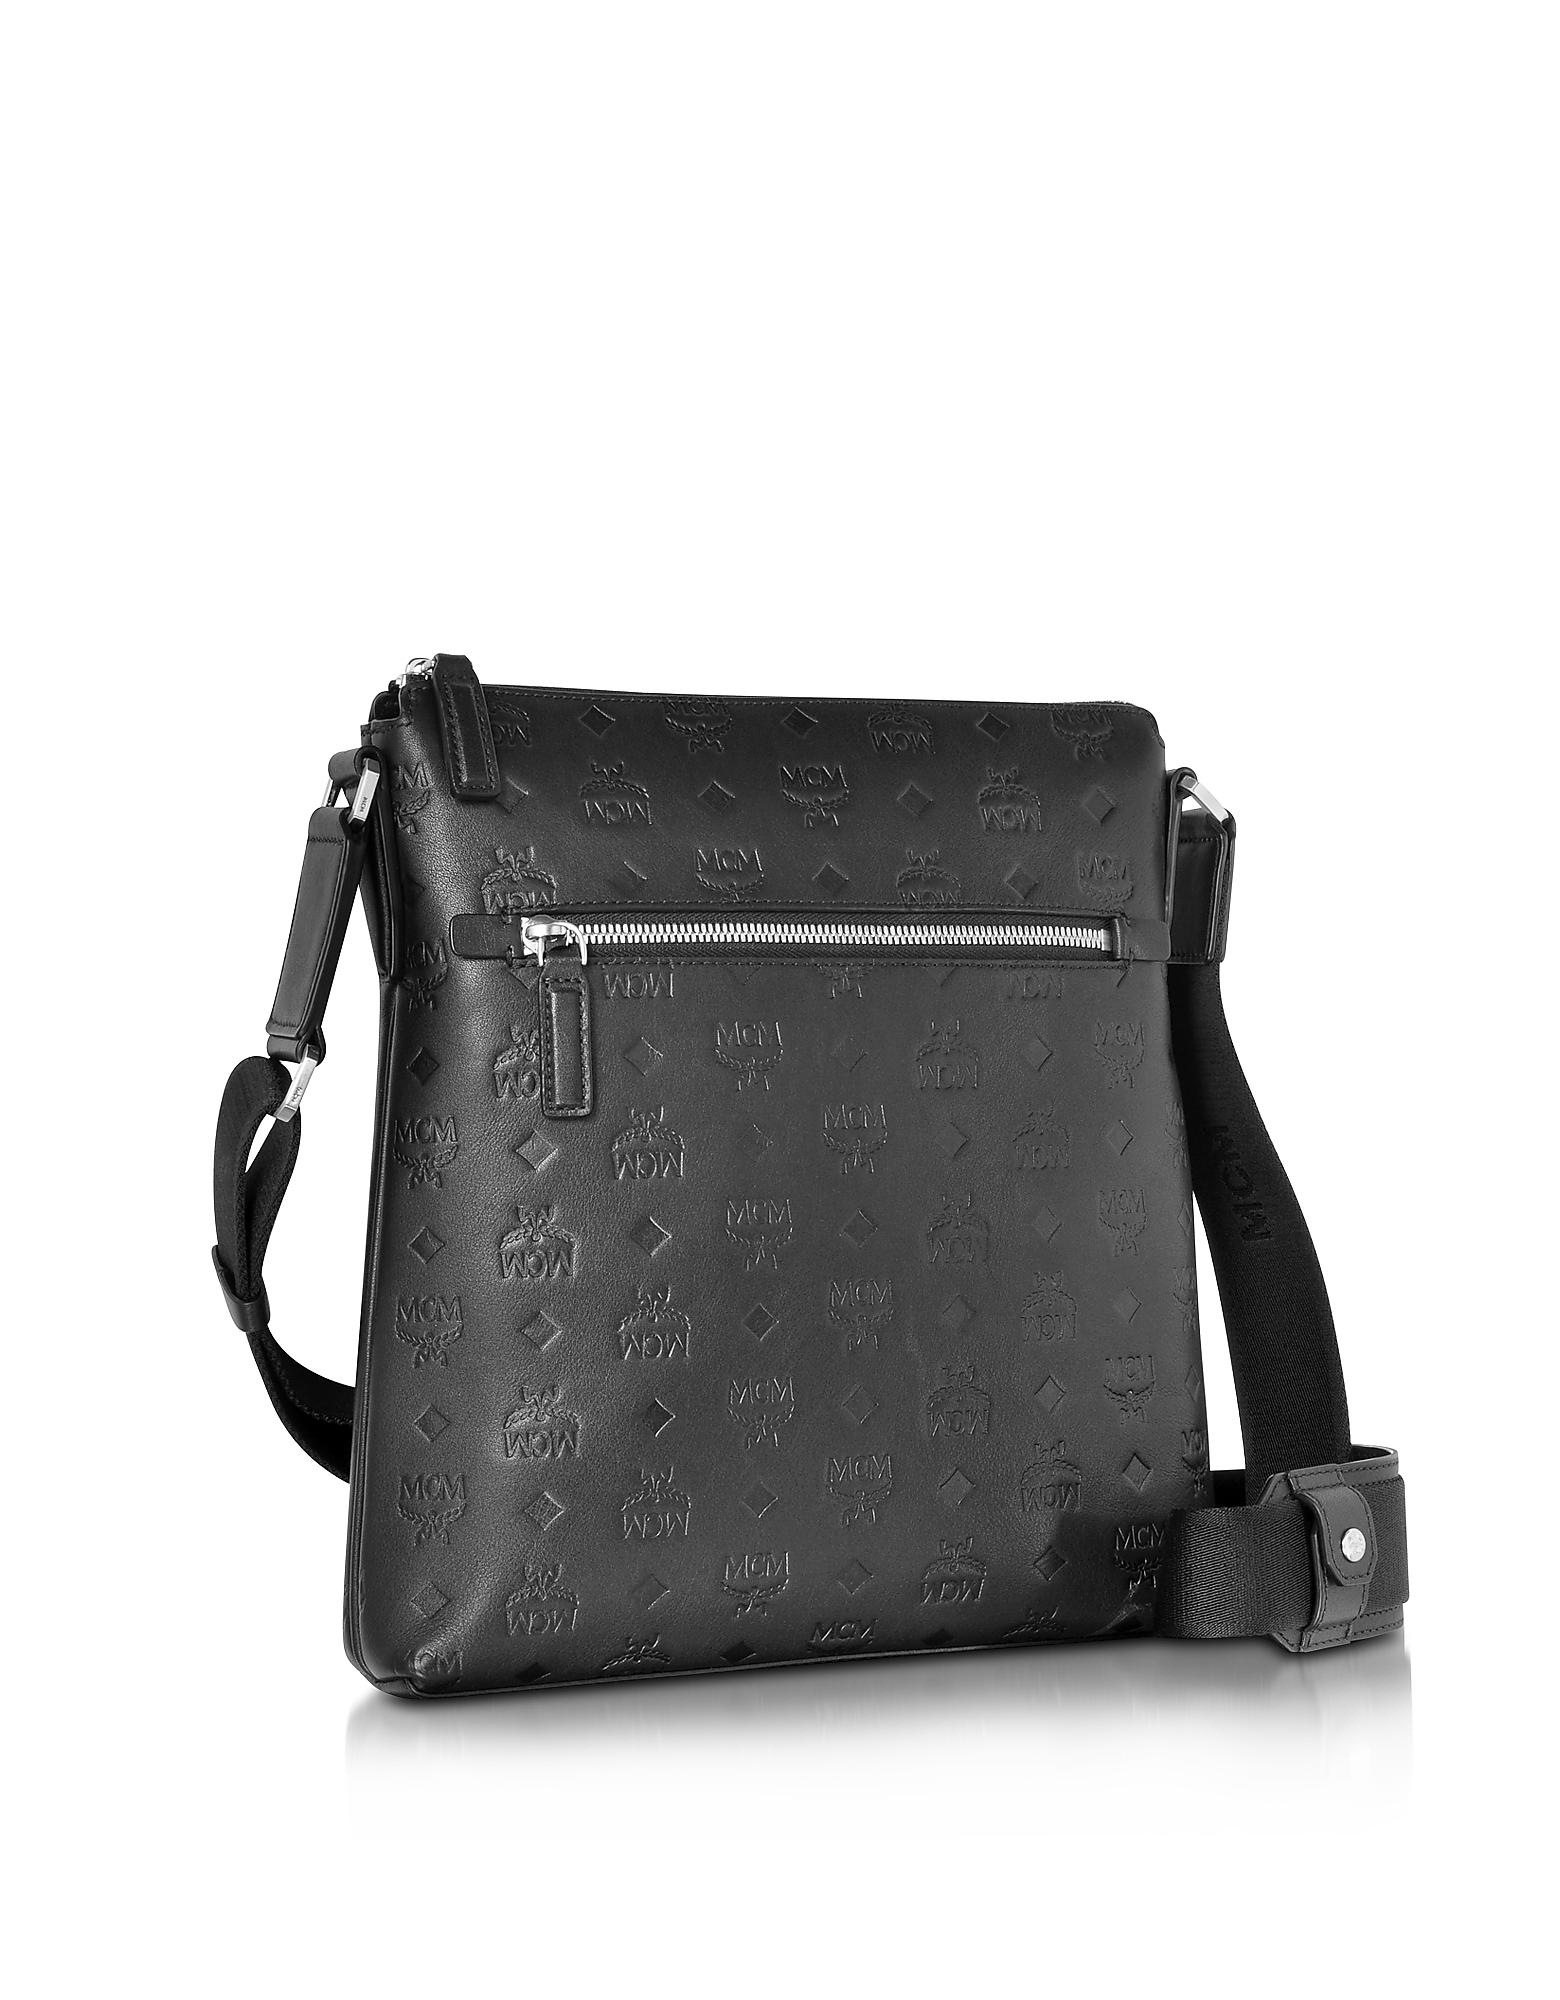 Lyst - Mcm Ottomar Black Monogram Leather Small Messenger Bag in Black for Men